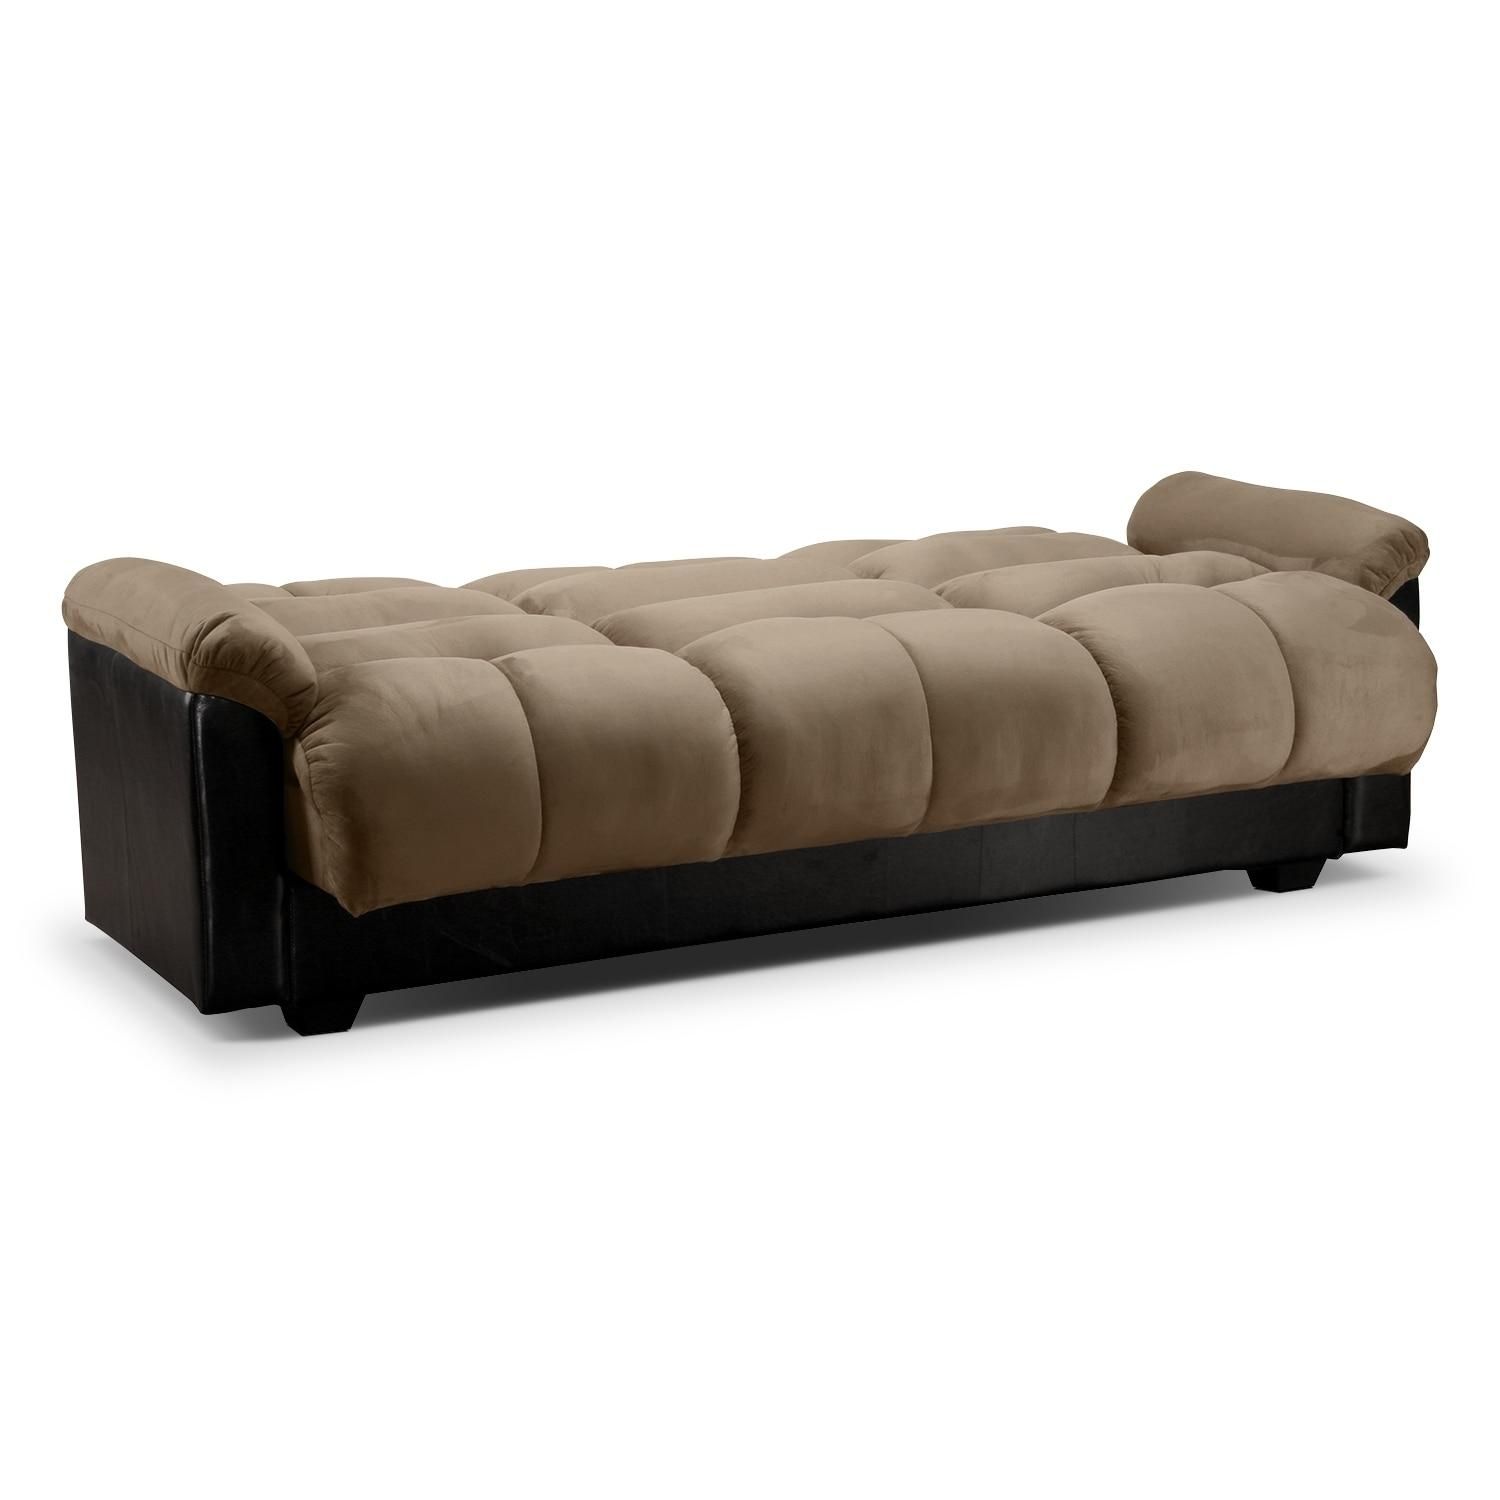 Ara Futon Sofa Bed With Storage – Hazelnut | Value City Furniture Within Fulton Sofa Beds (Photo 16 of 21)